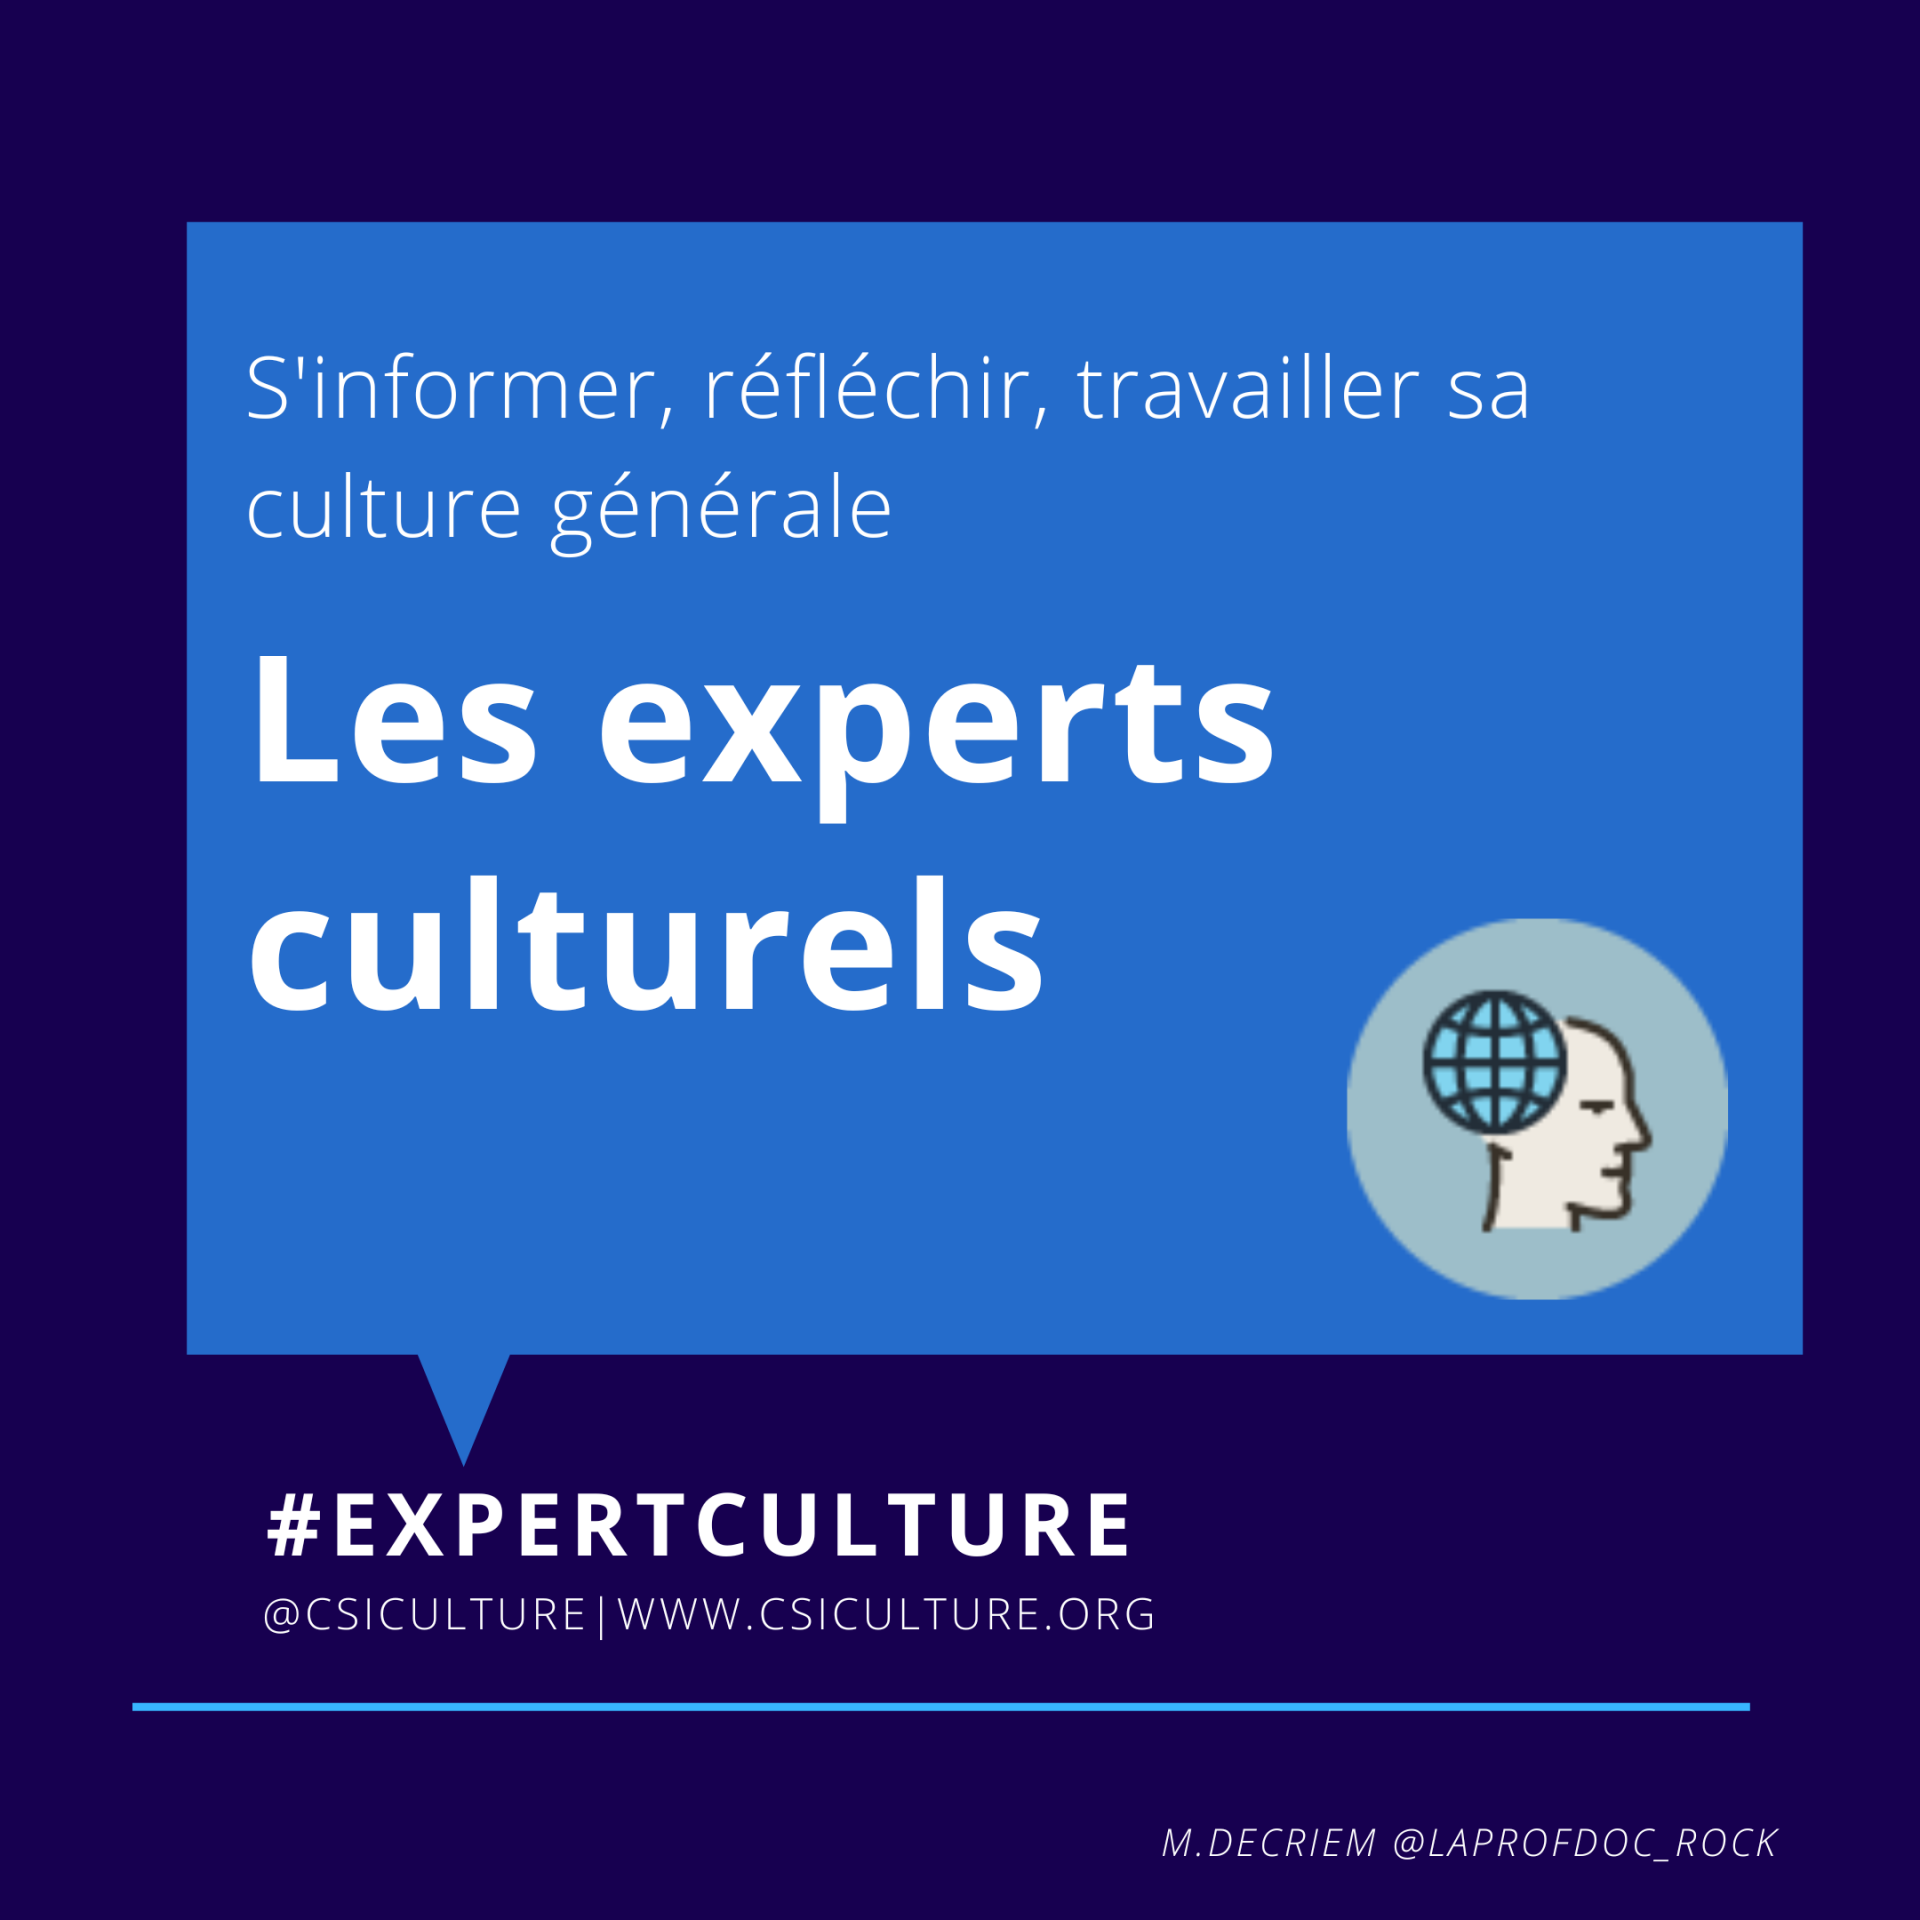 Les experts culturels